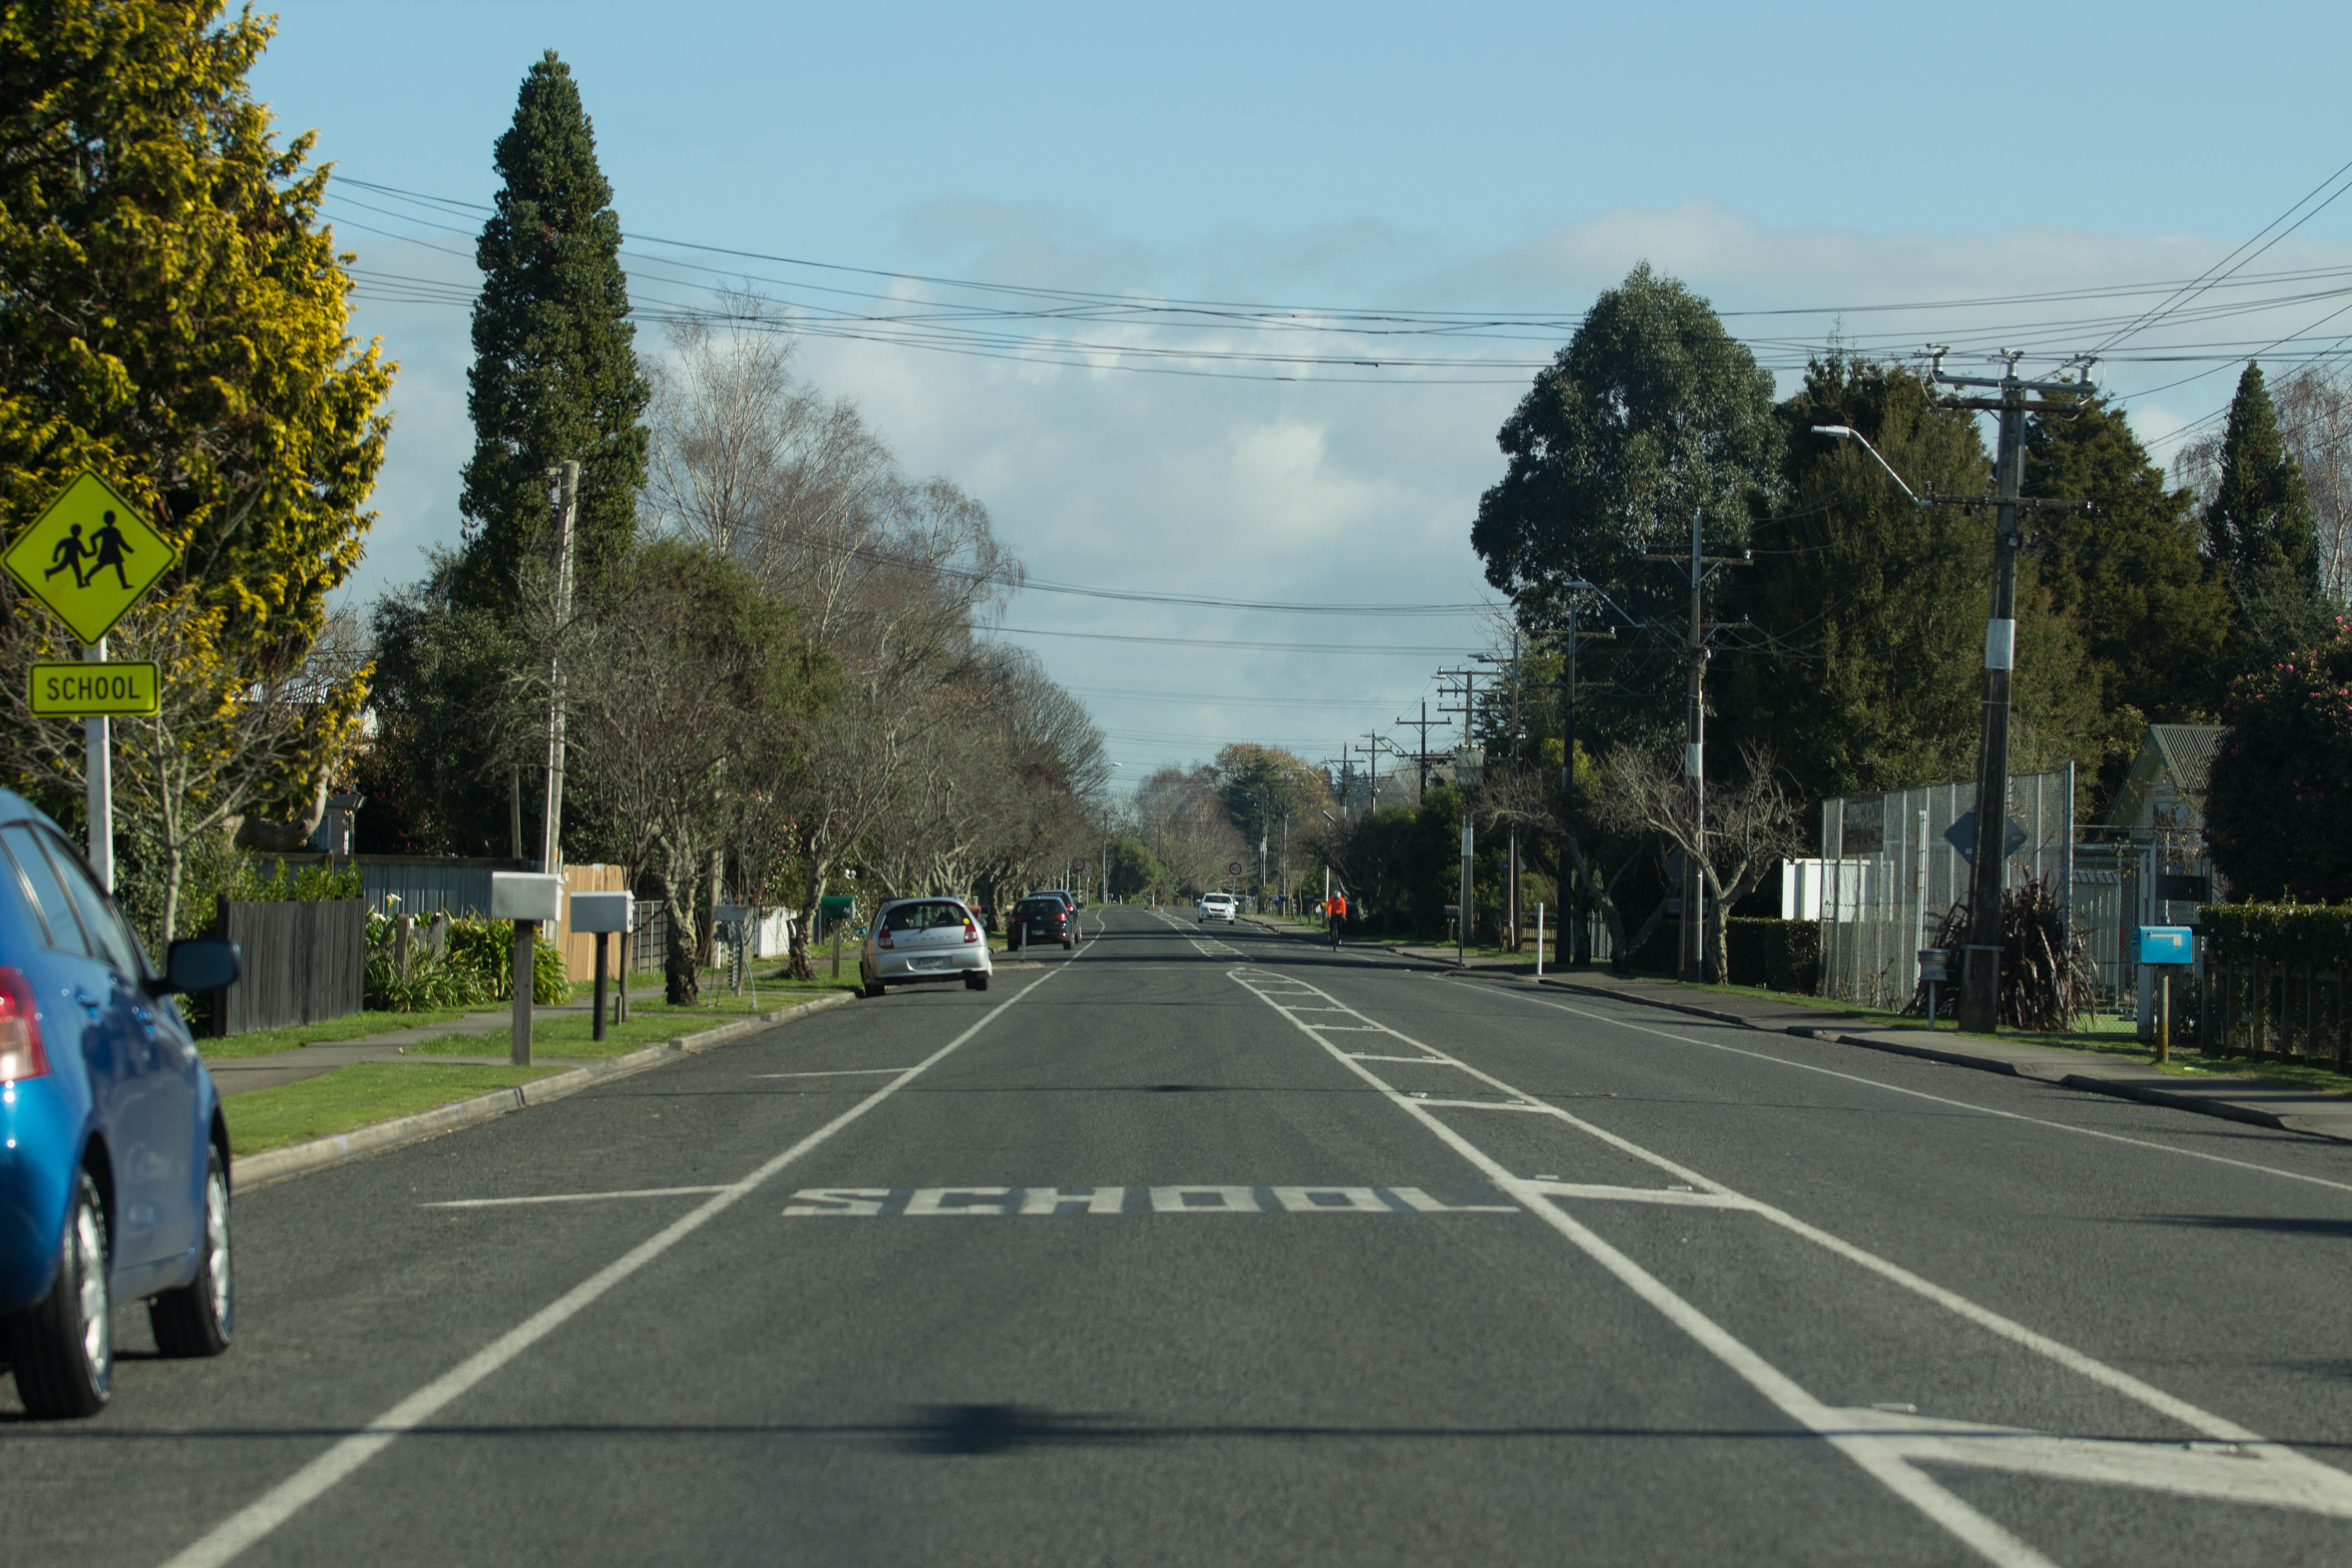 Matangi Road by Matangi School